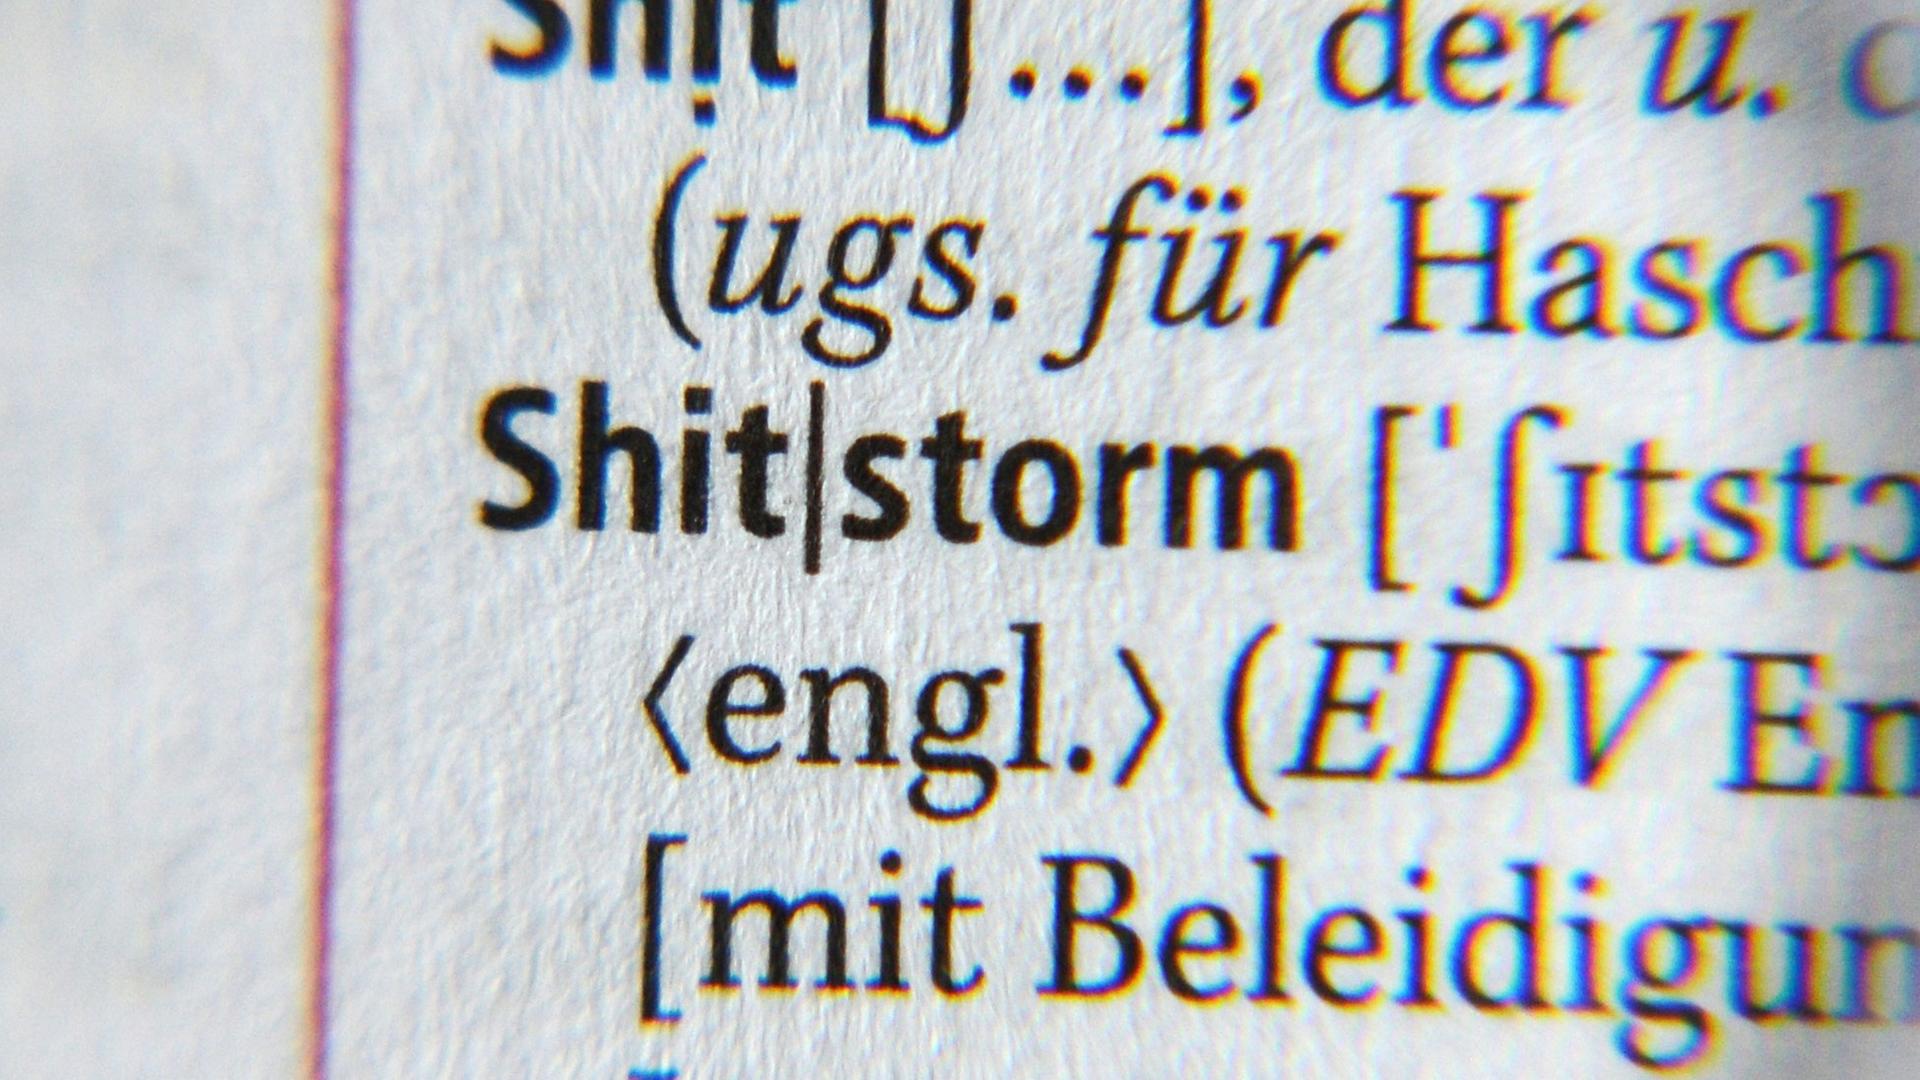 Der Begriff "Shitstorm" in einer Großansicht im Duden.